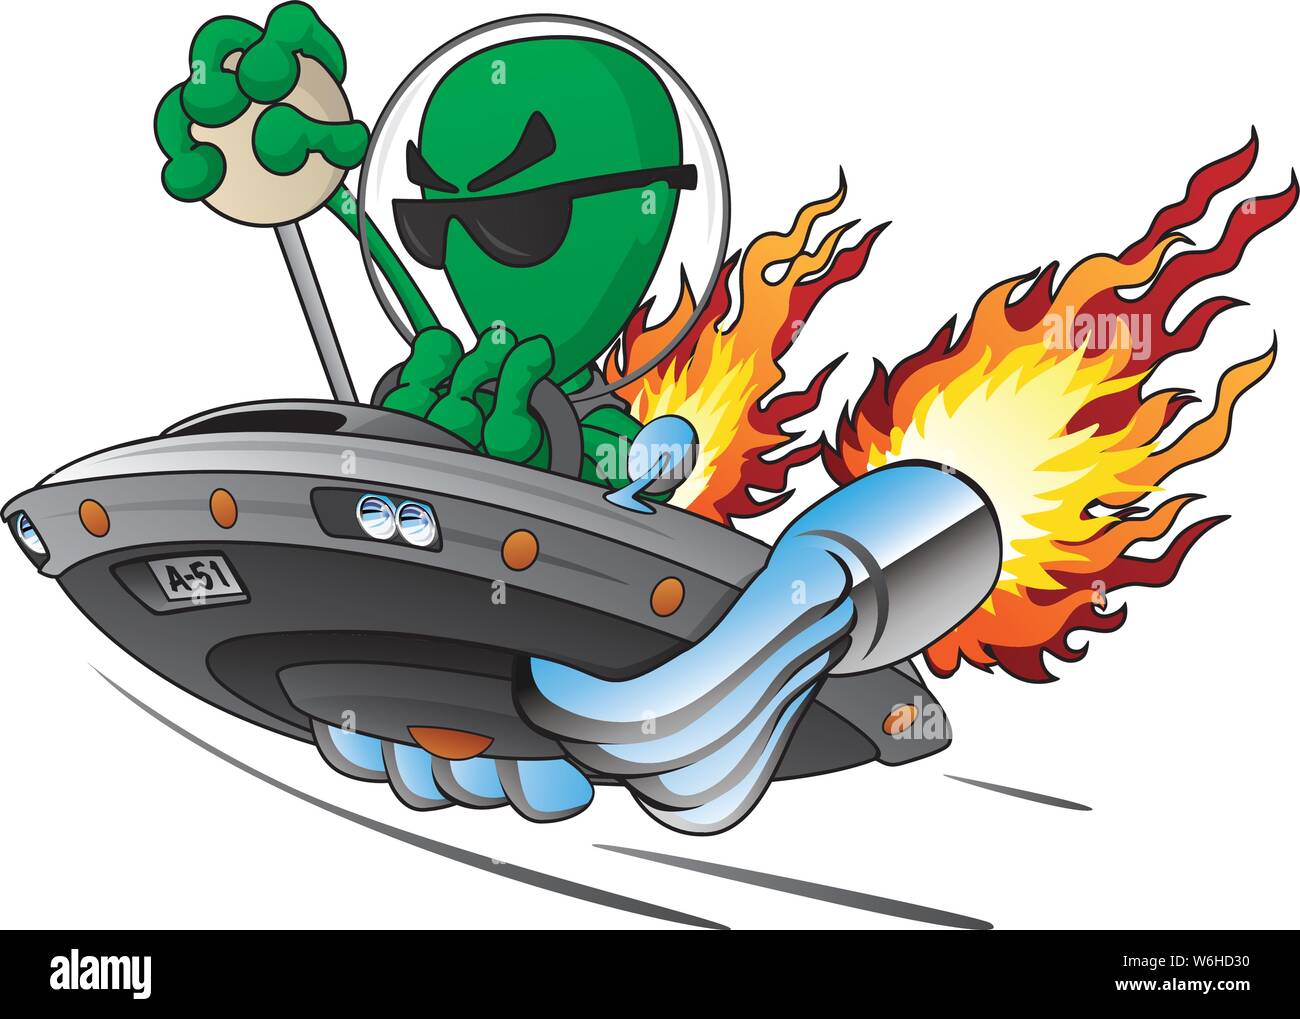 UFO Alien Area 51 Hot Rod Isolated Vector Illustration Stock Vector